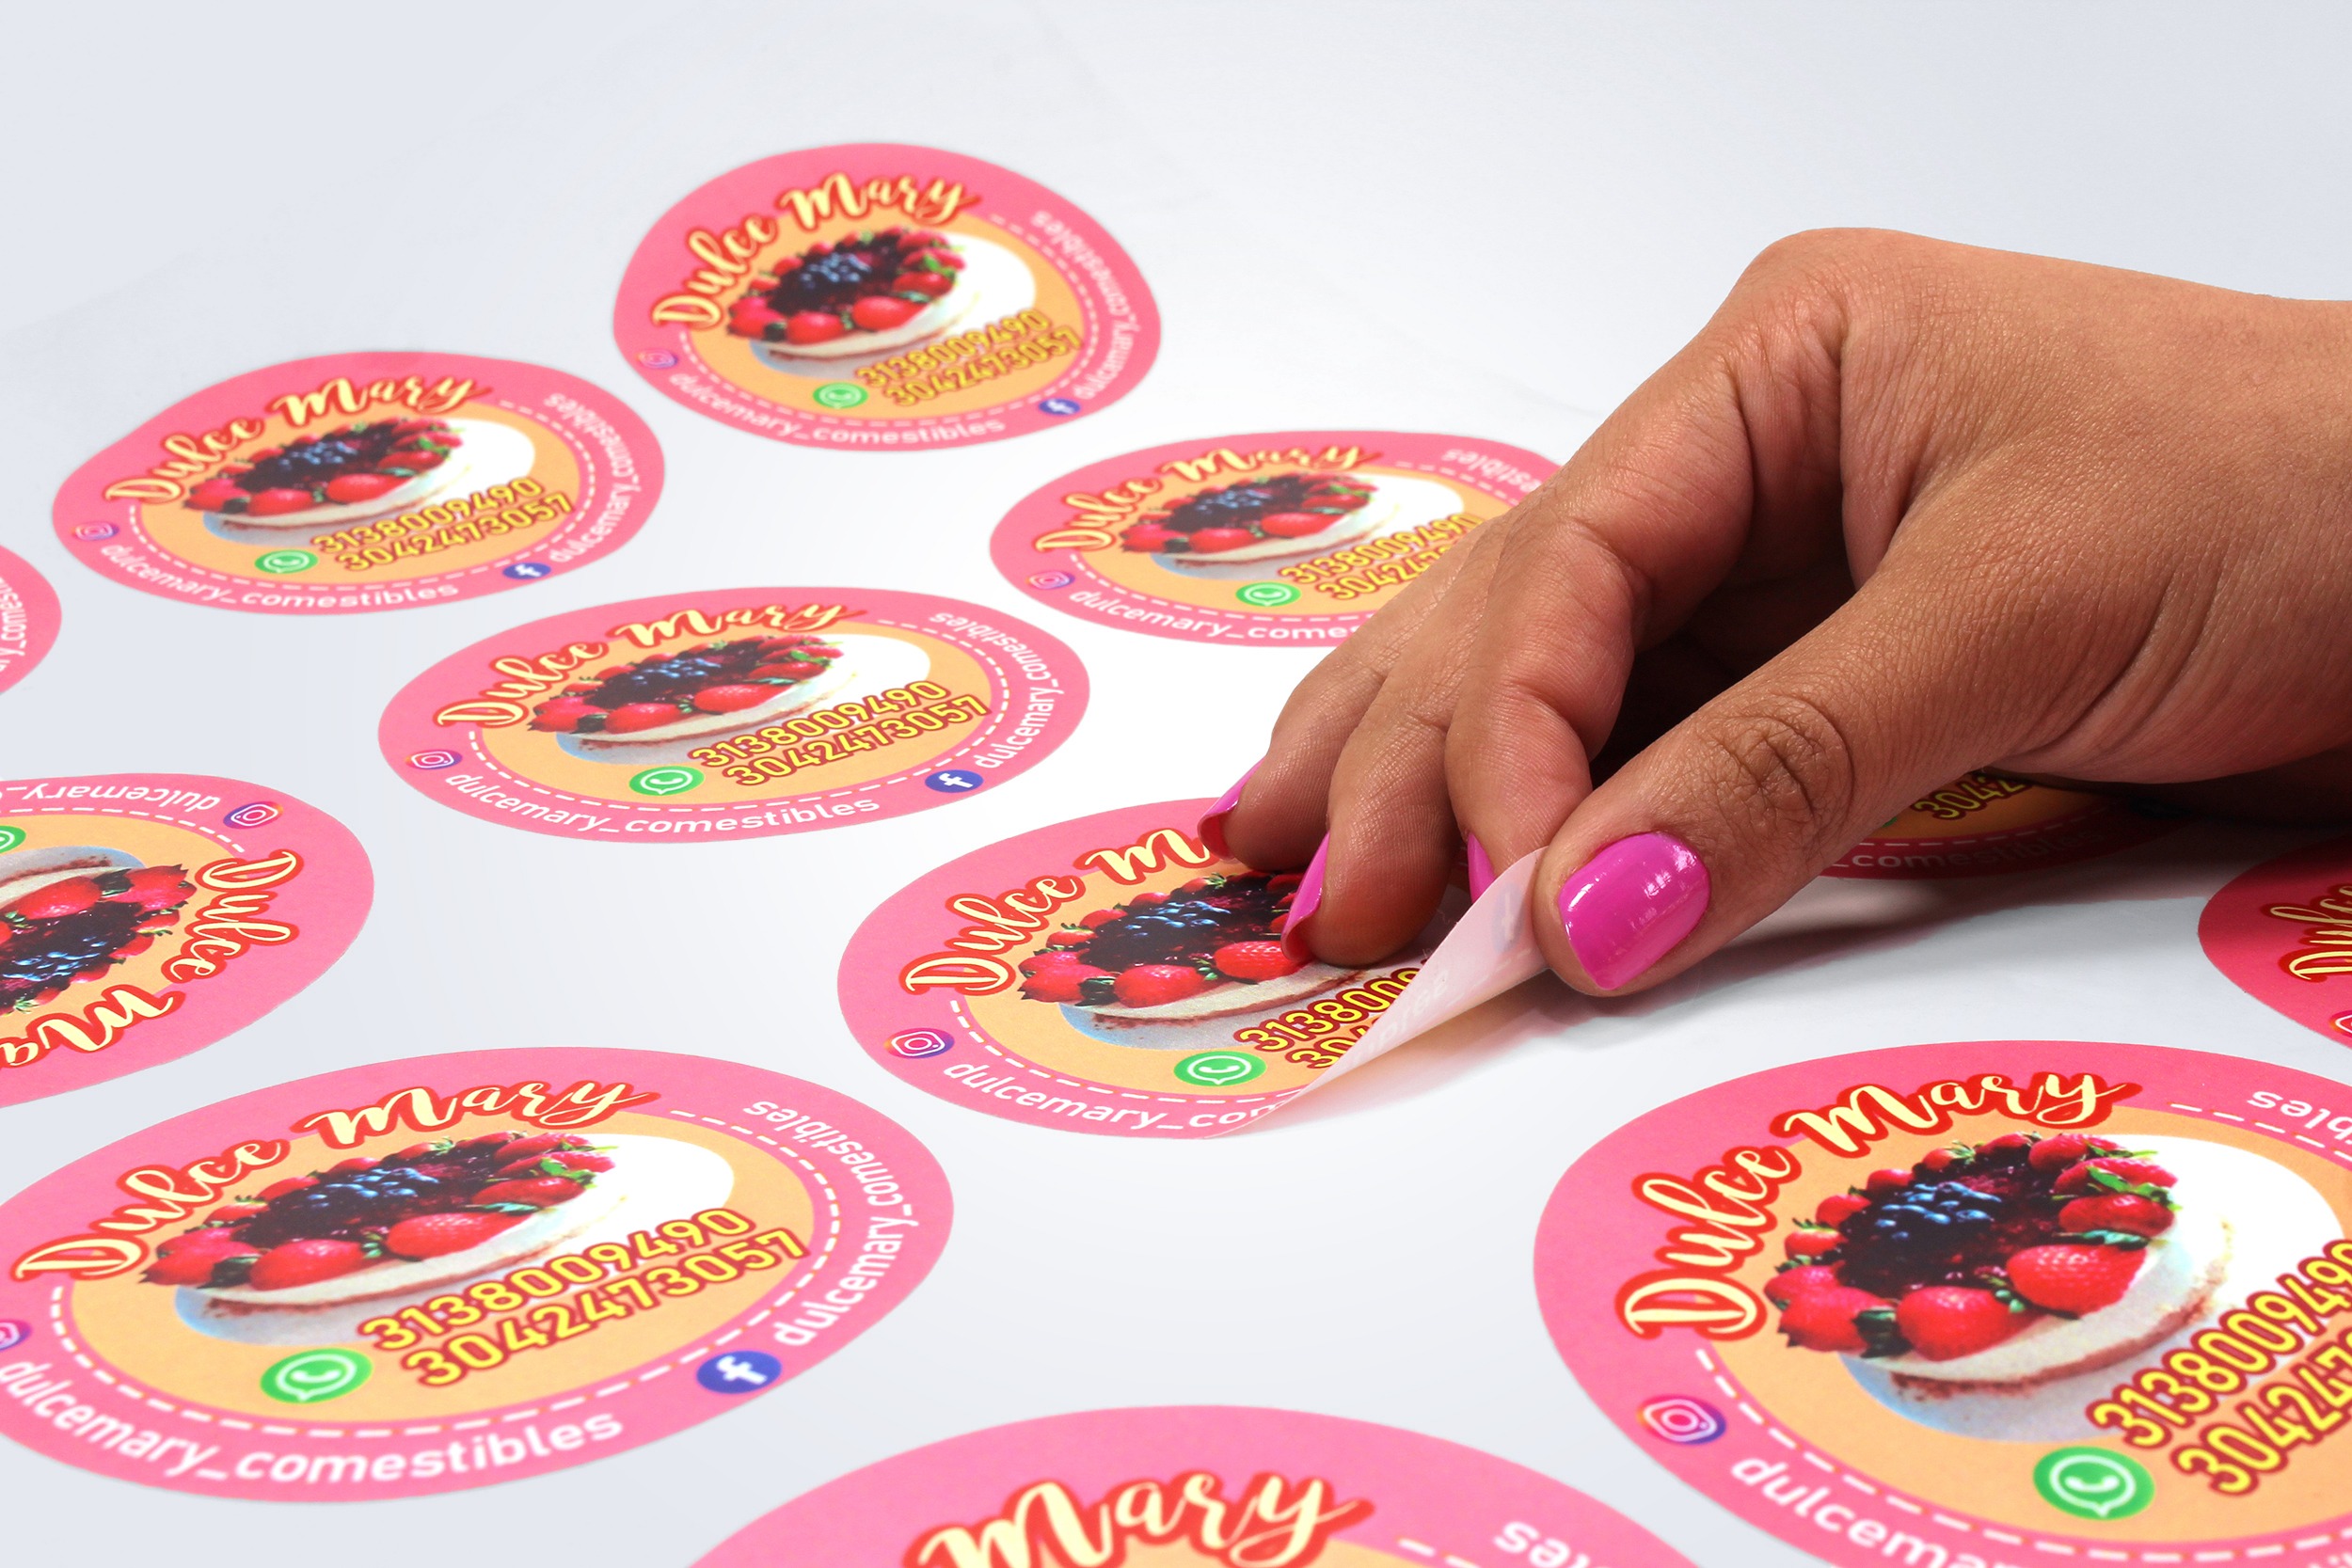 Noveno Carne de cordero Persona responsable Stickers Adhesivos – Puntodigital